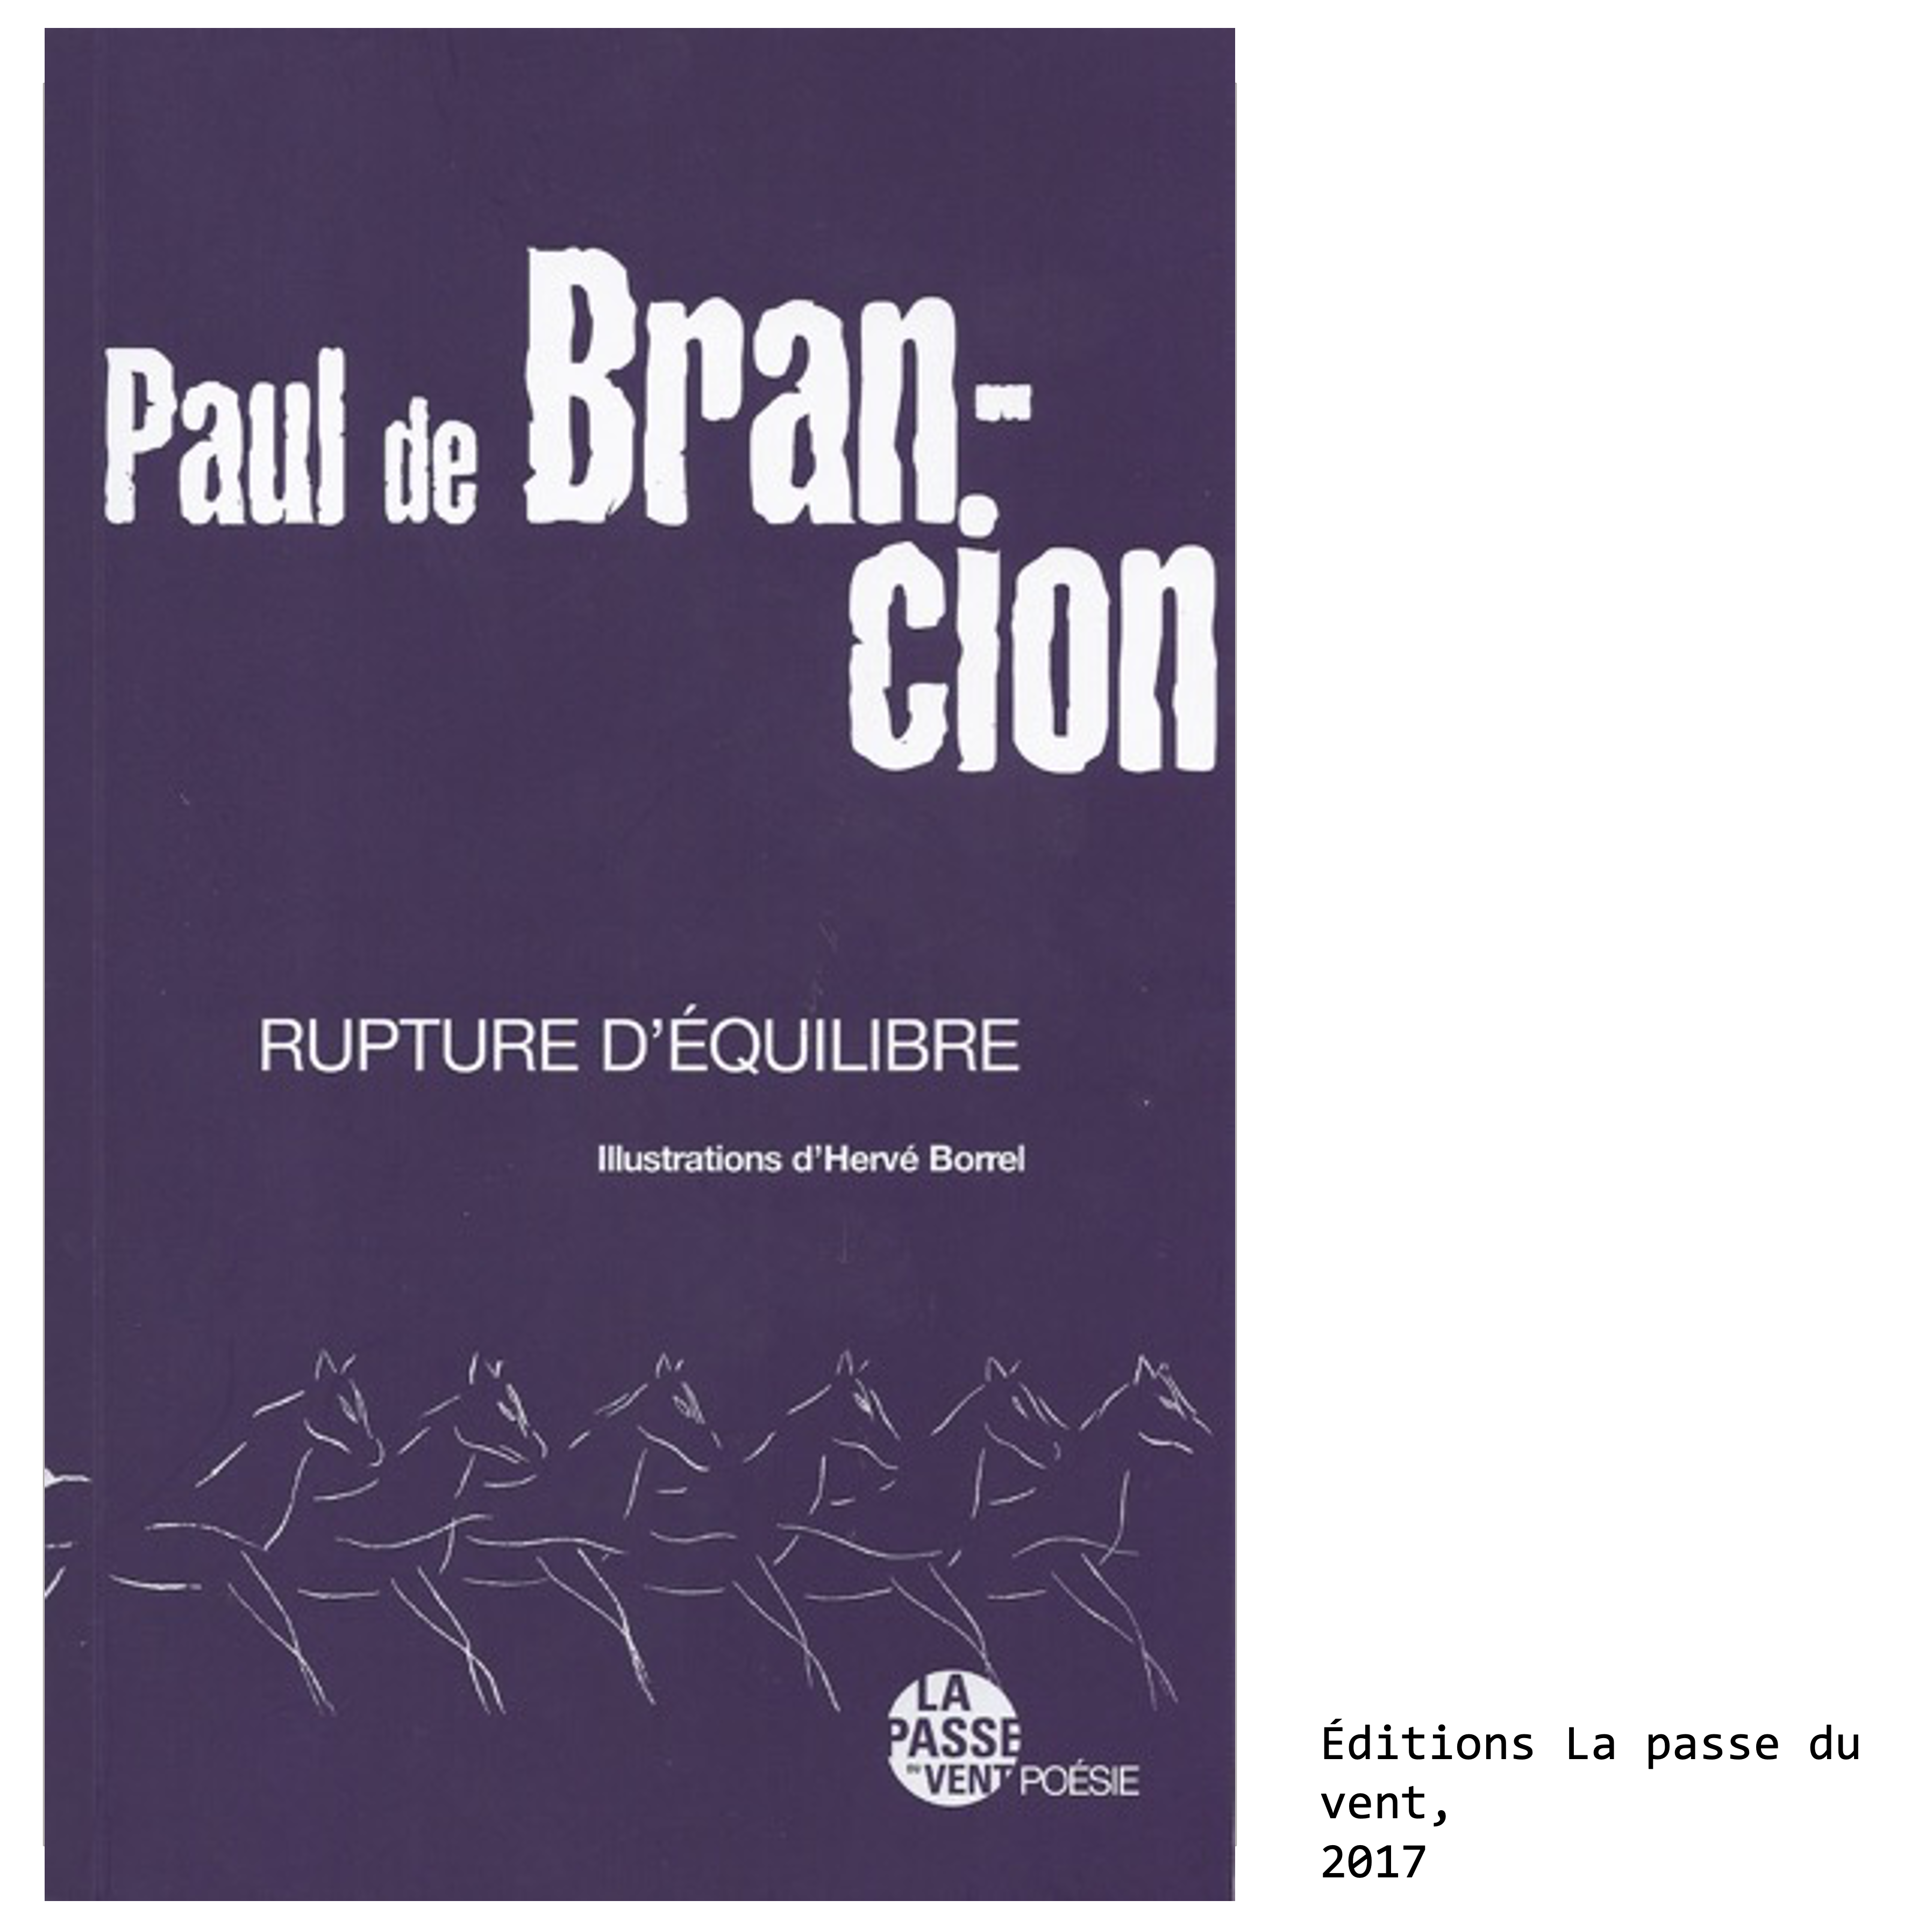 Couverture du livre de Paul de Brancion, écrivain et poète : Rupture d’équilibre, éditions La passe du vent, 2017